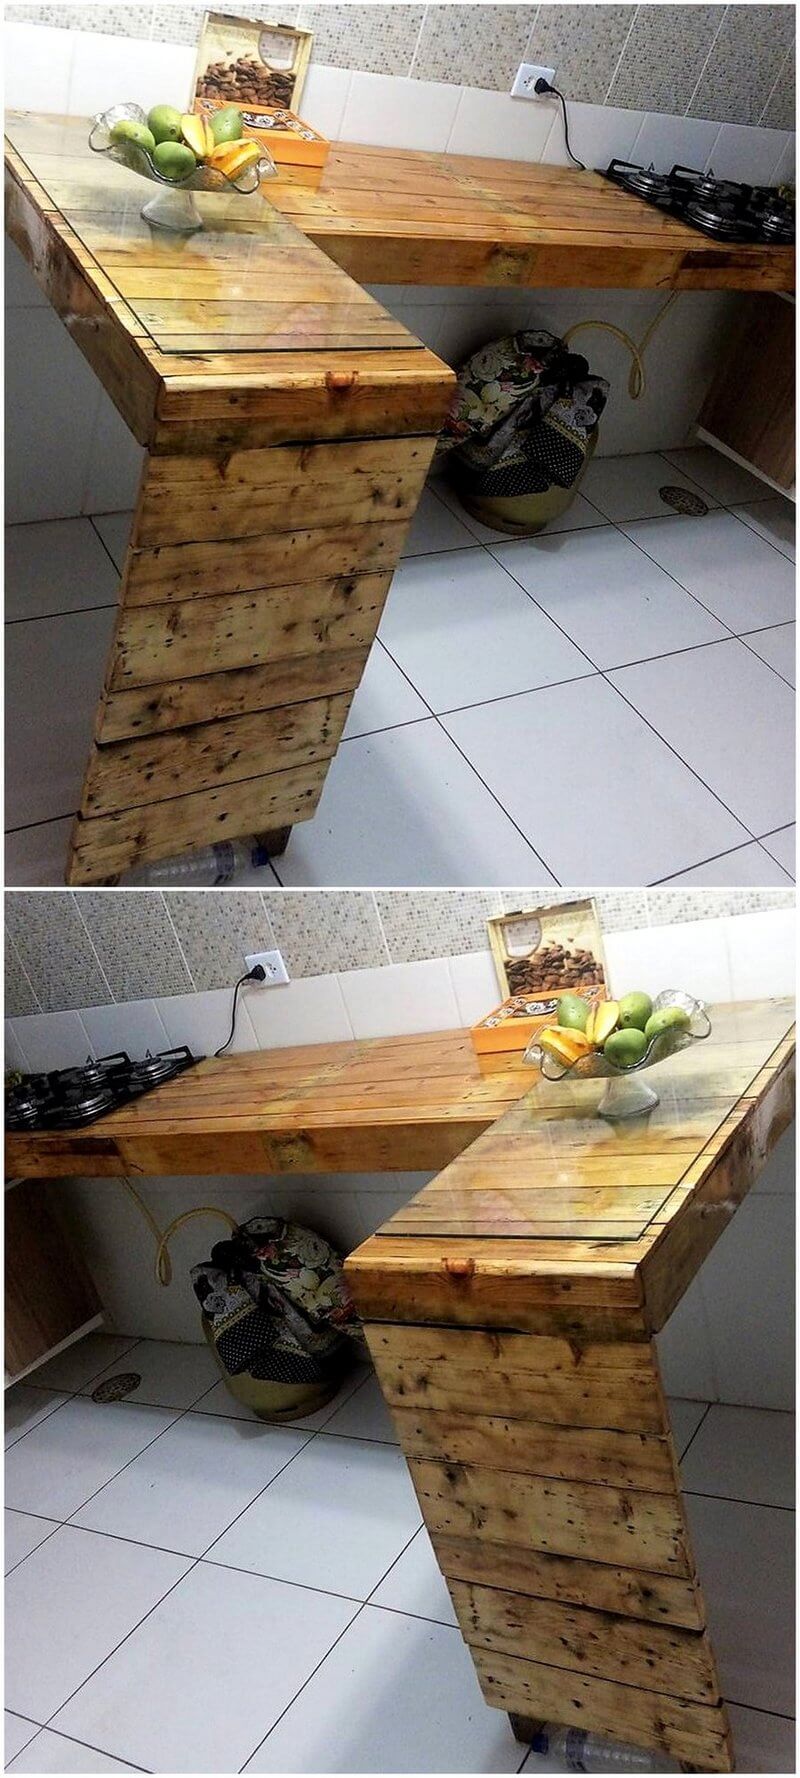 reused pallet kitchen idea